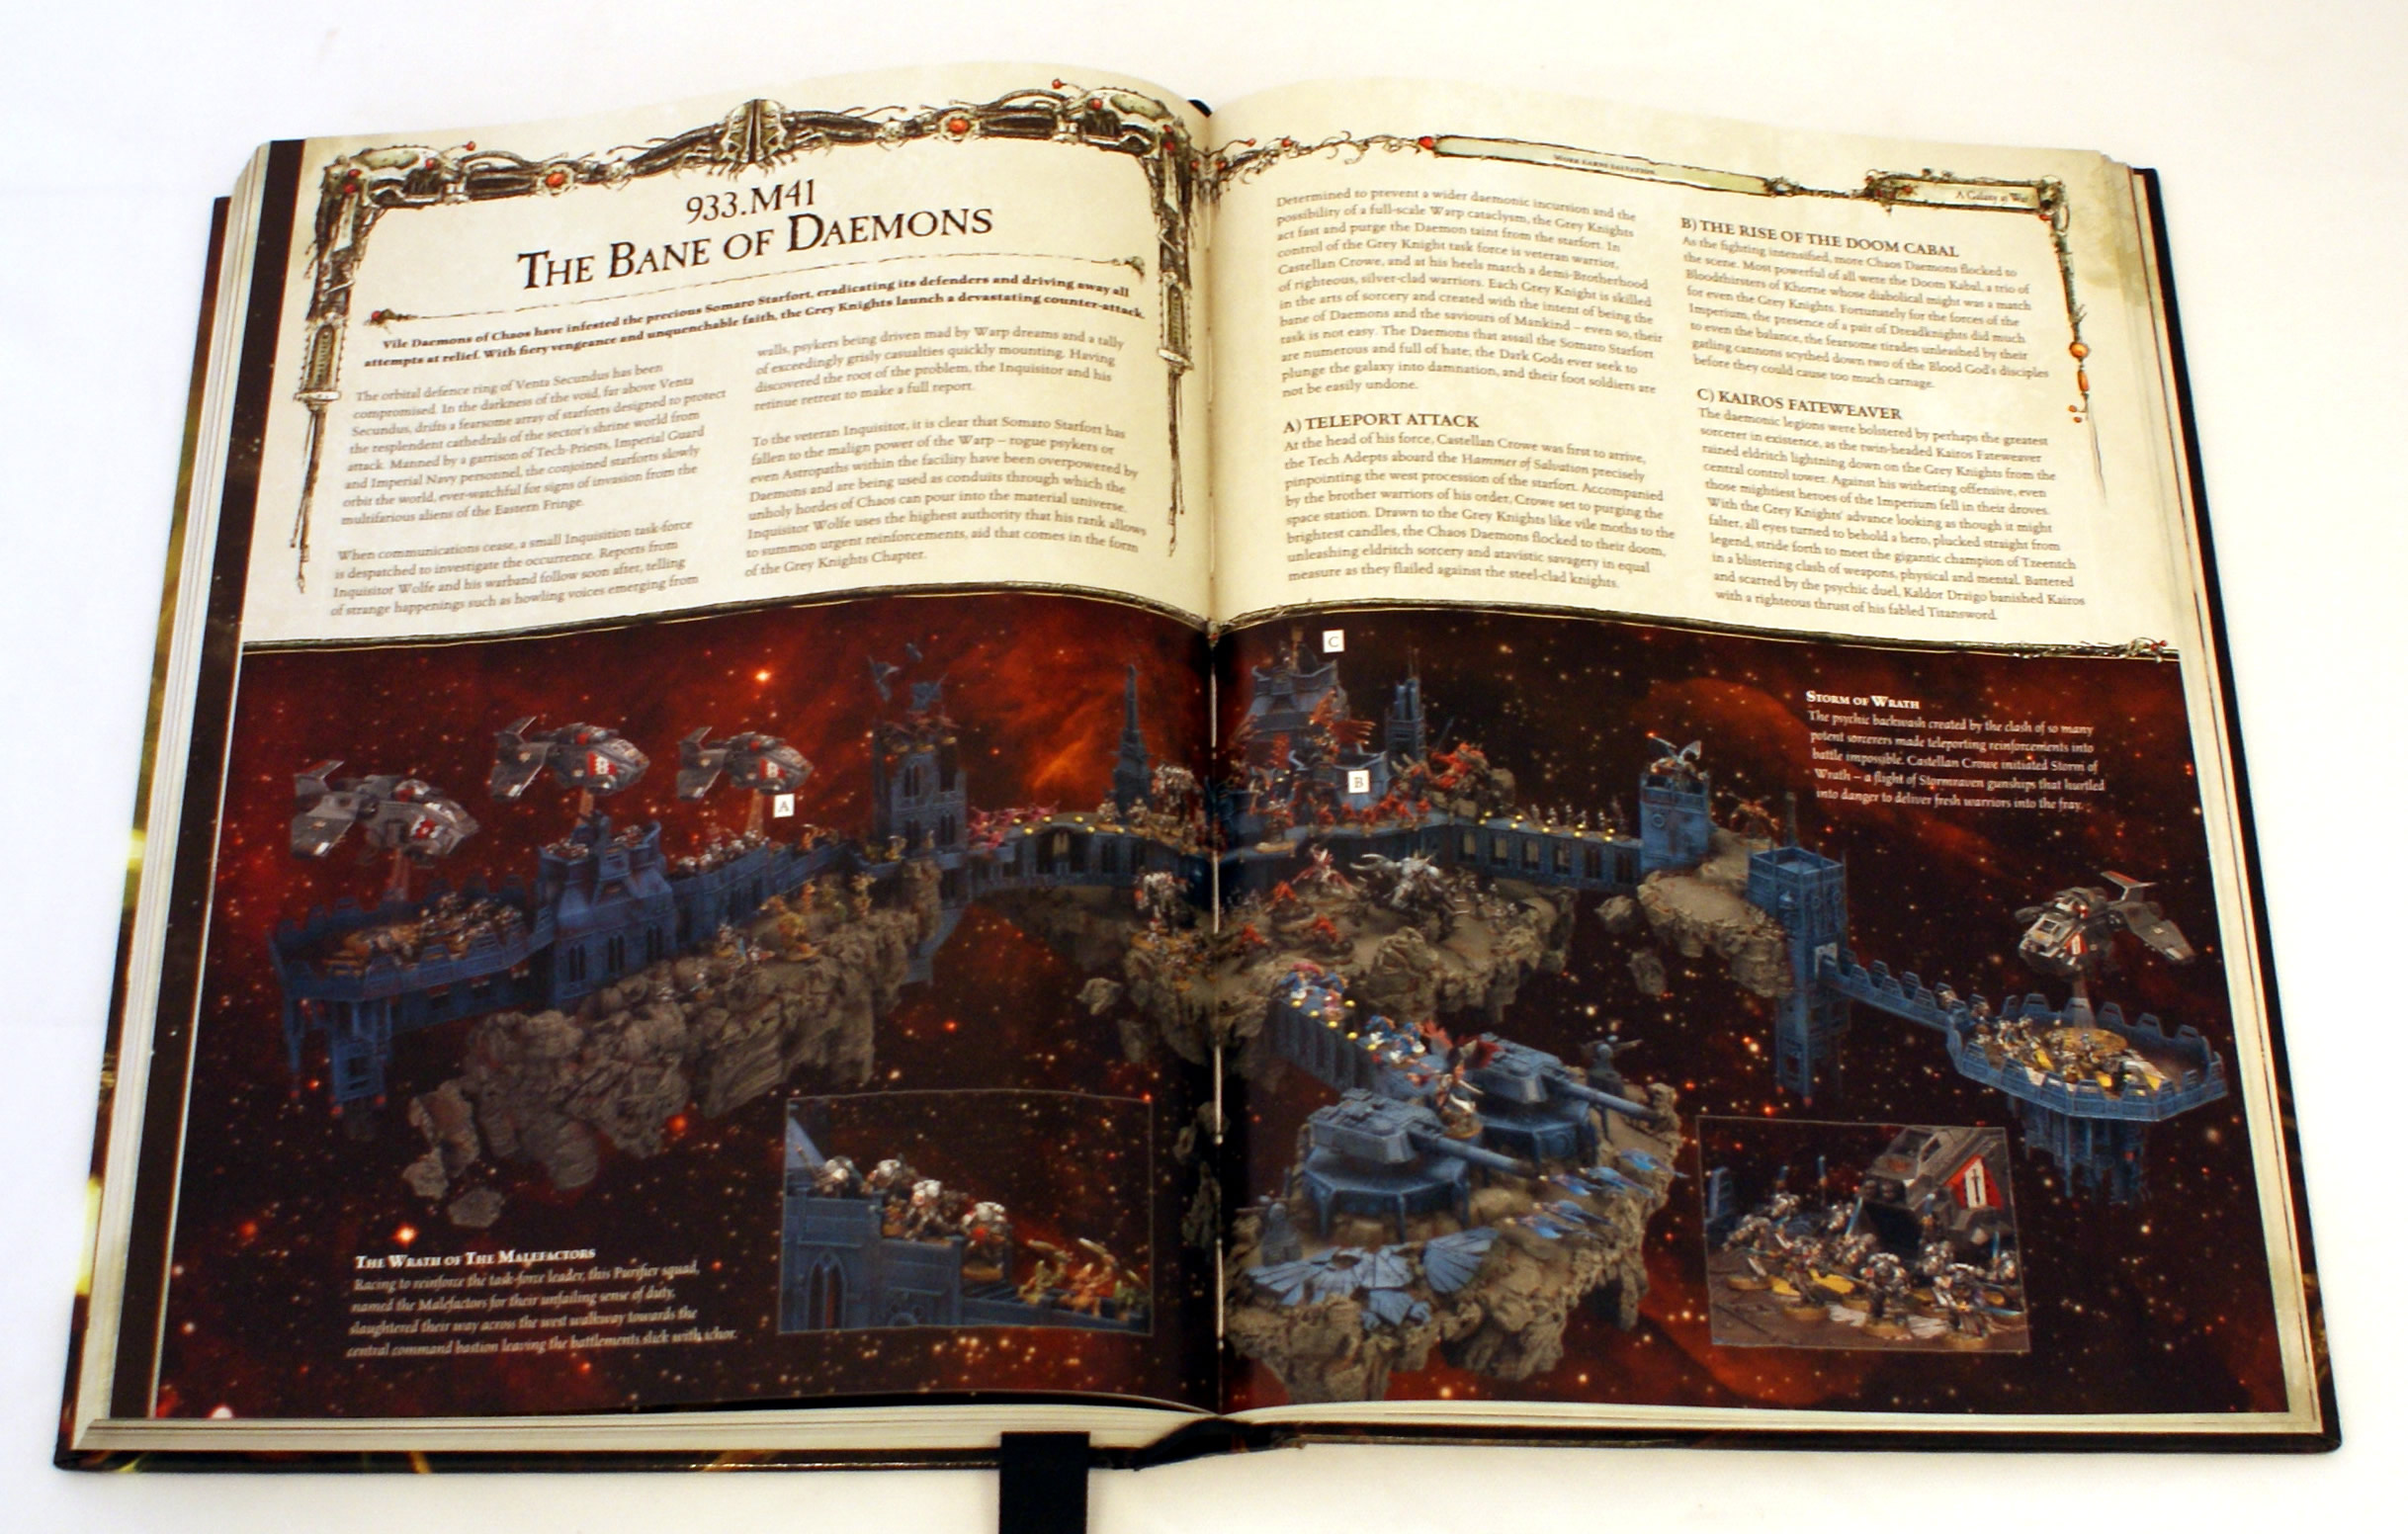 Warhammer Fantasy Battles 6th Edition Rulebook.pdf